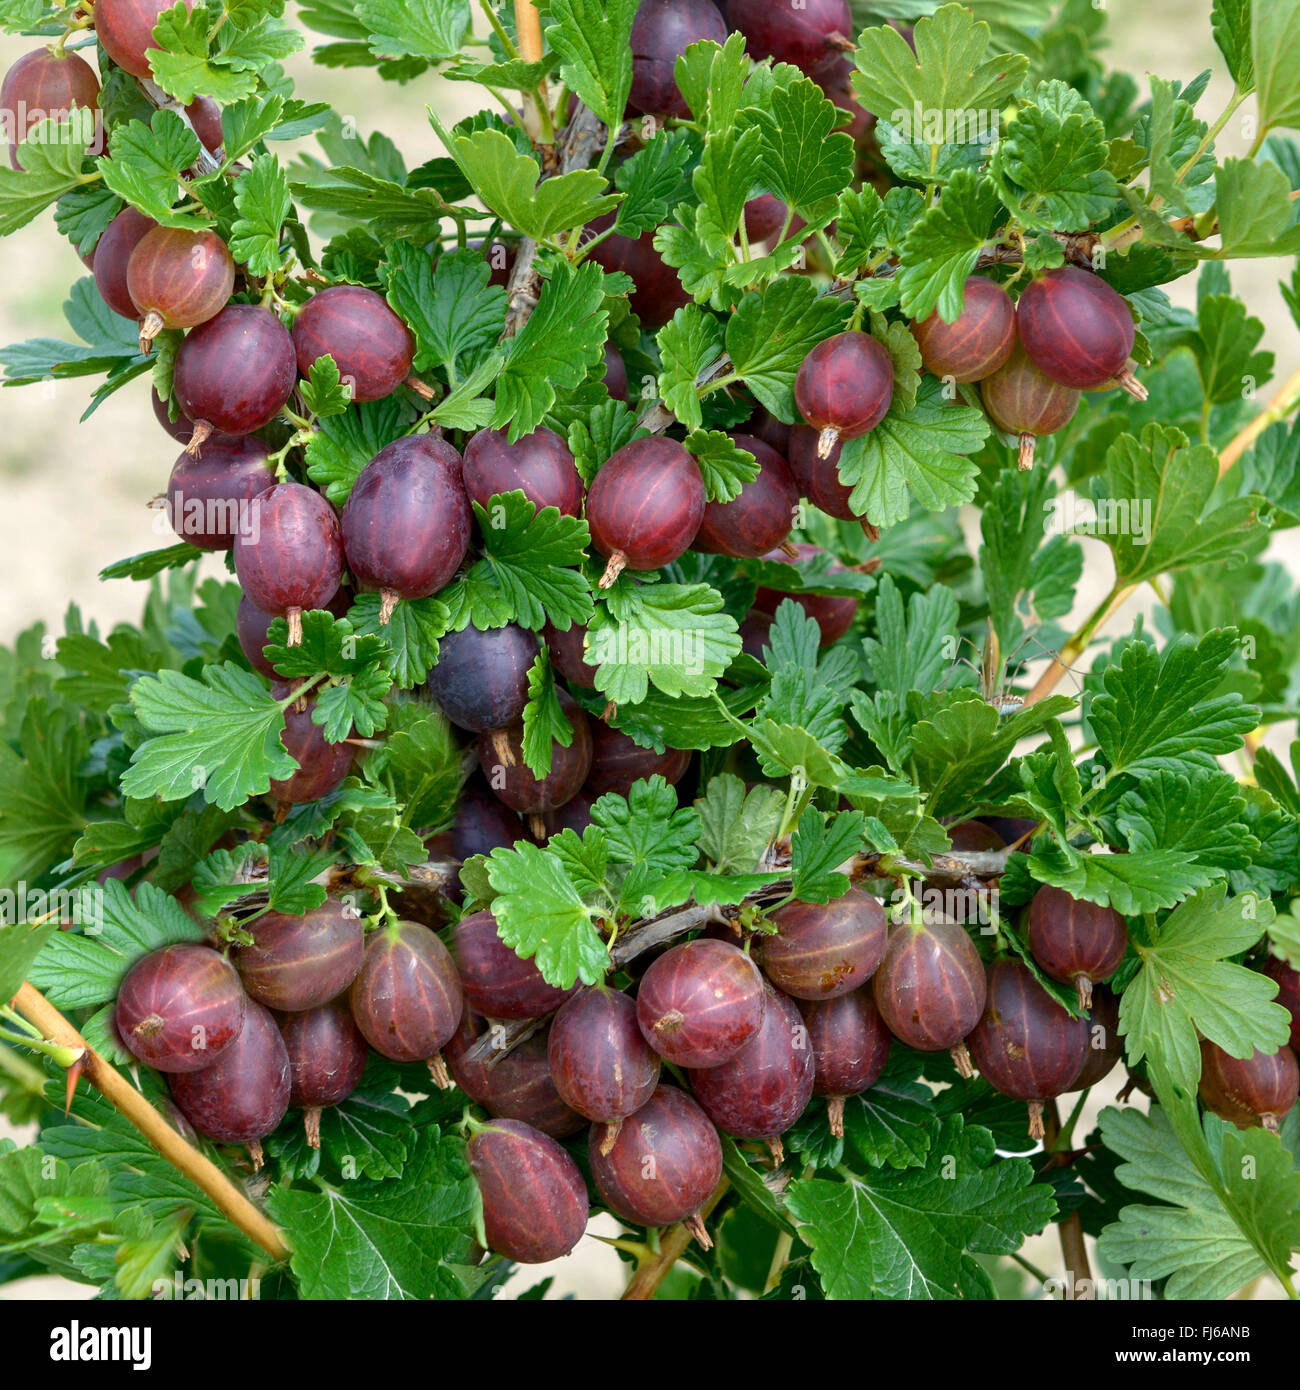 wilde Stachelbeere, europäischen Stachelbeere (Ribes Uva-Crispa 'Hinnomaeki Rot', Ribes Uva-Crispa Hinnomaeki Rot), Sorte Hinnomaeki Rot Stockfoto